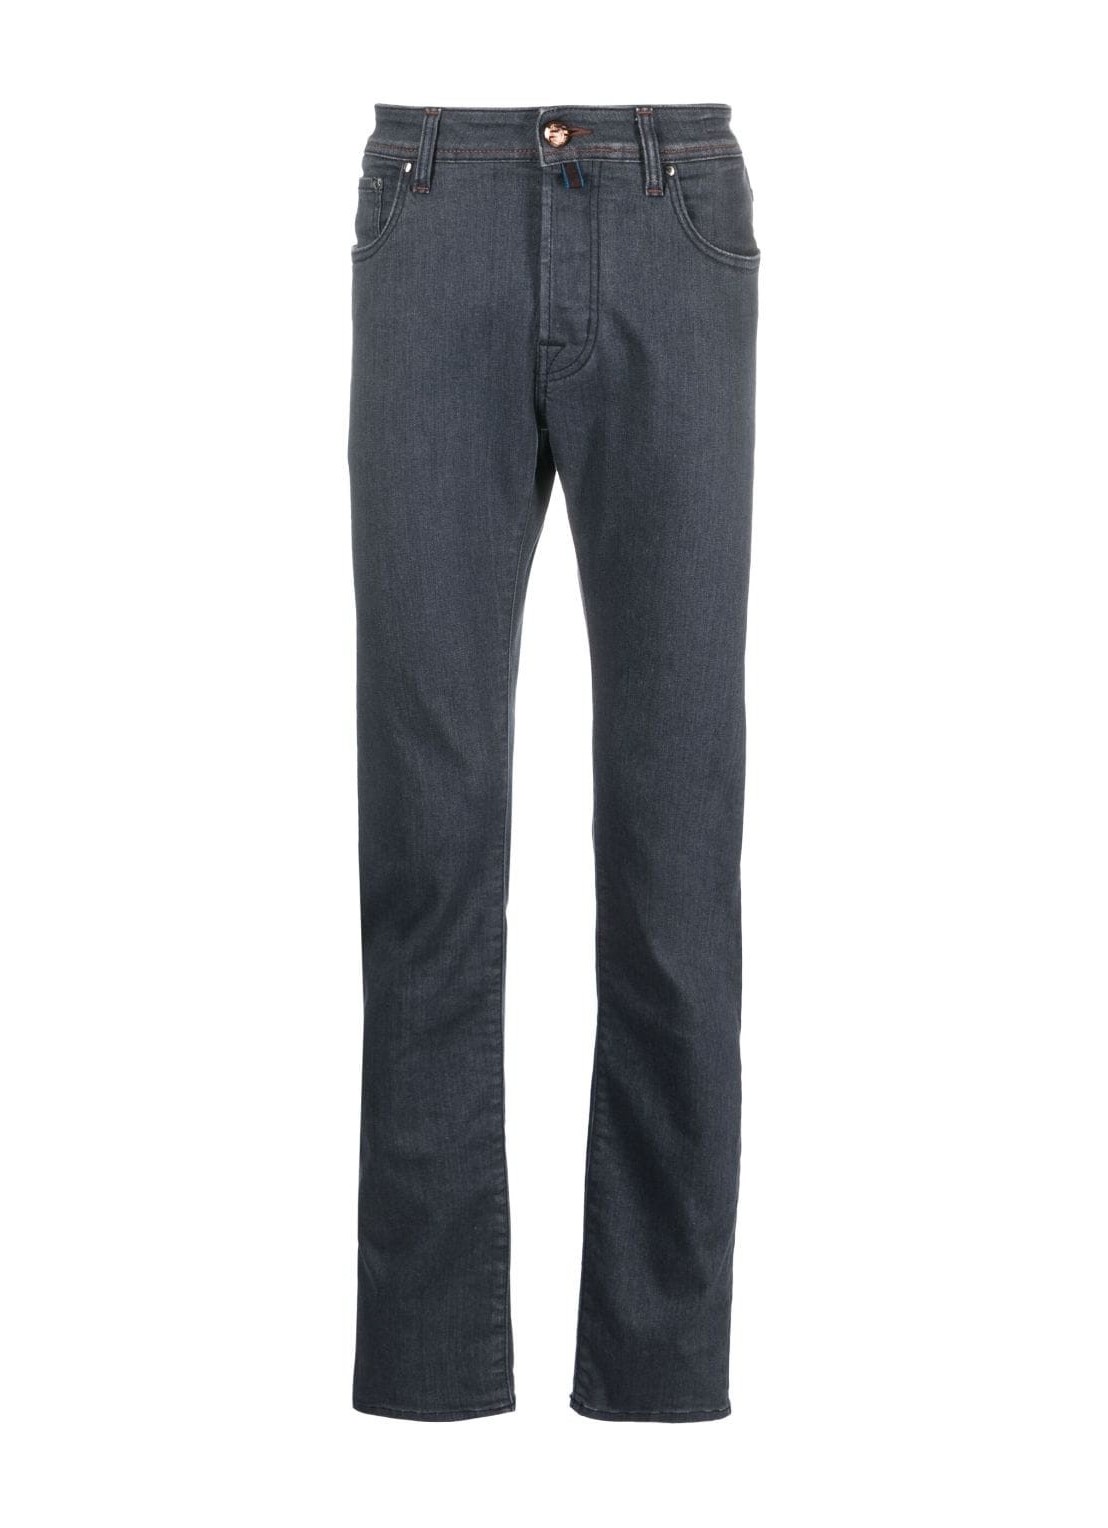 Pantalon jeans jacob cohen pant 5 pkt slim fit bard - uqe0434s3618 540d talla 32
 